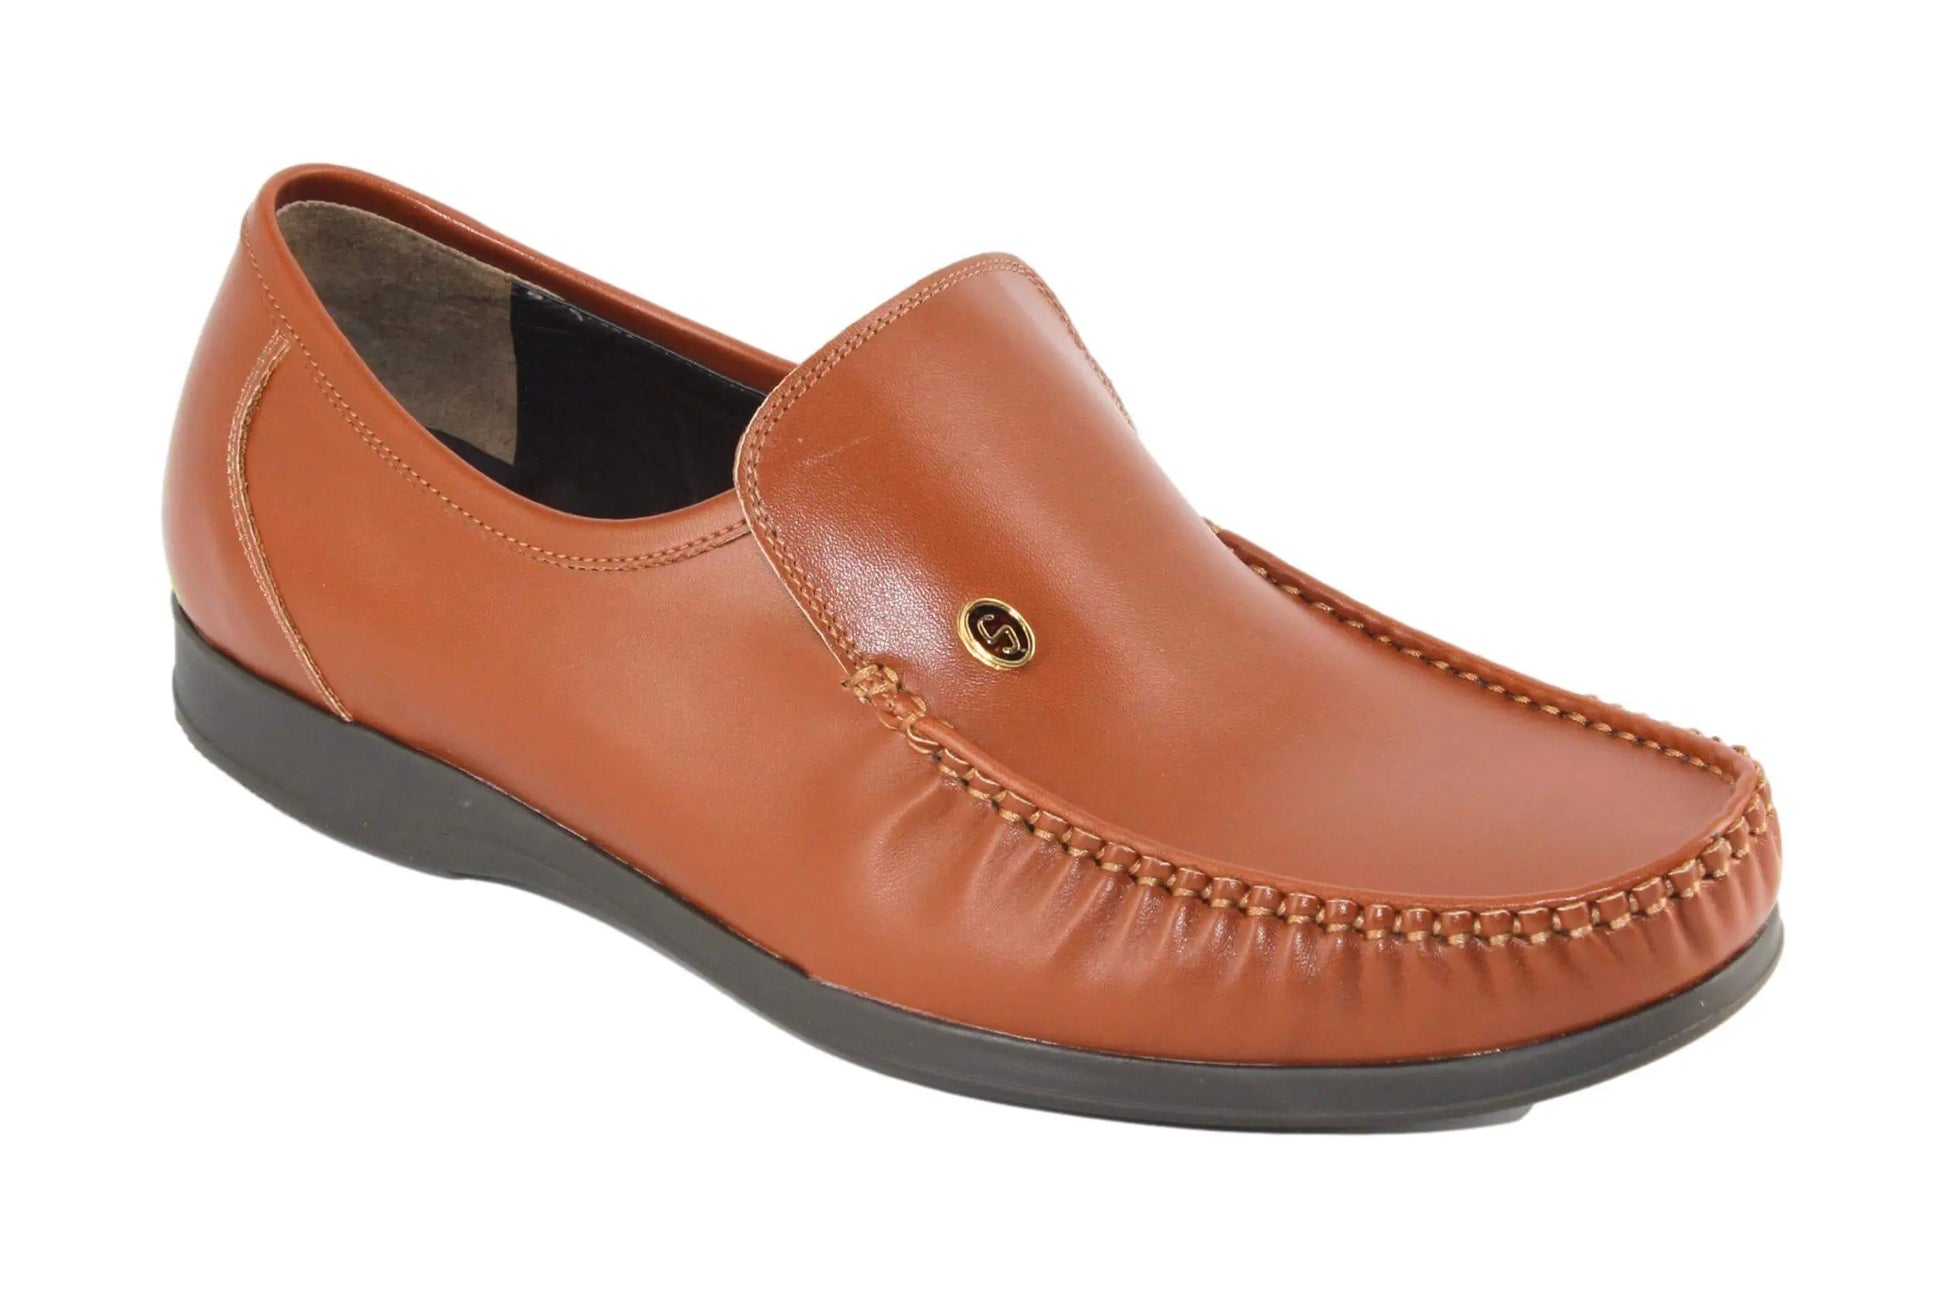 أنواع الحذاء | ShoeTypes حذاء رسمي كلاسيك إيطالي أنواع الحذاء - رسمي - موكسان